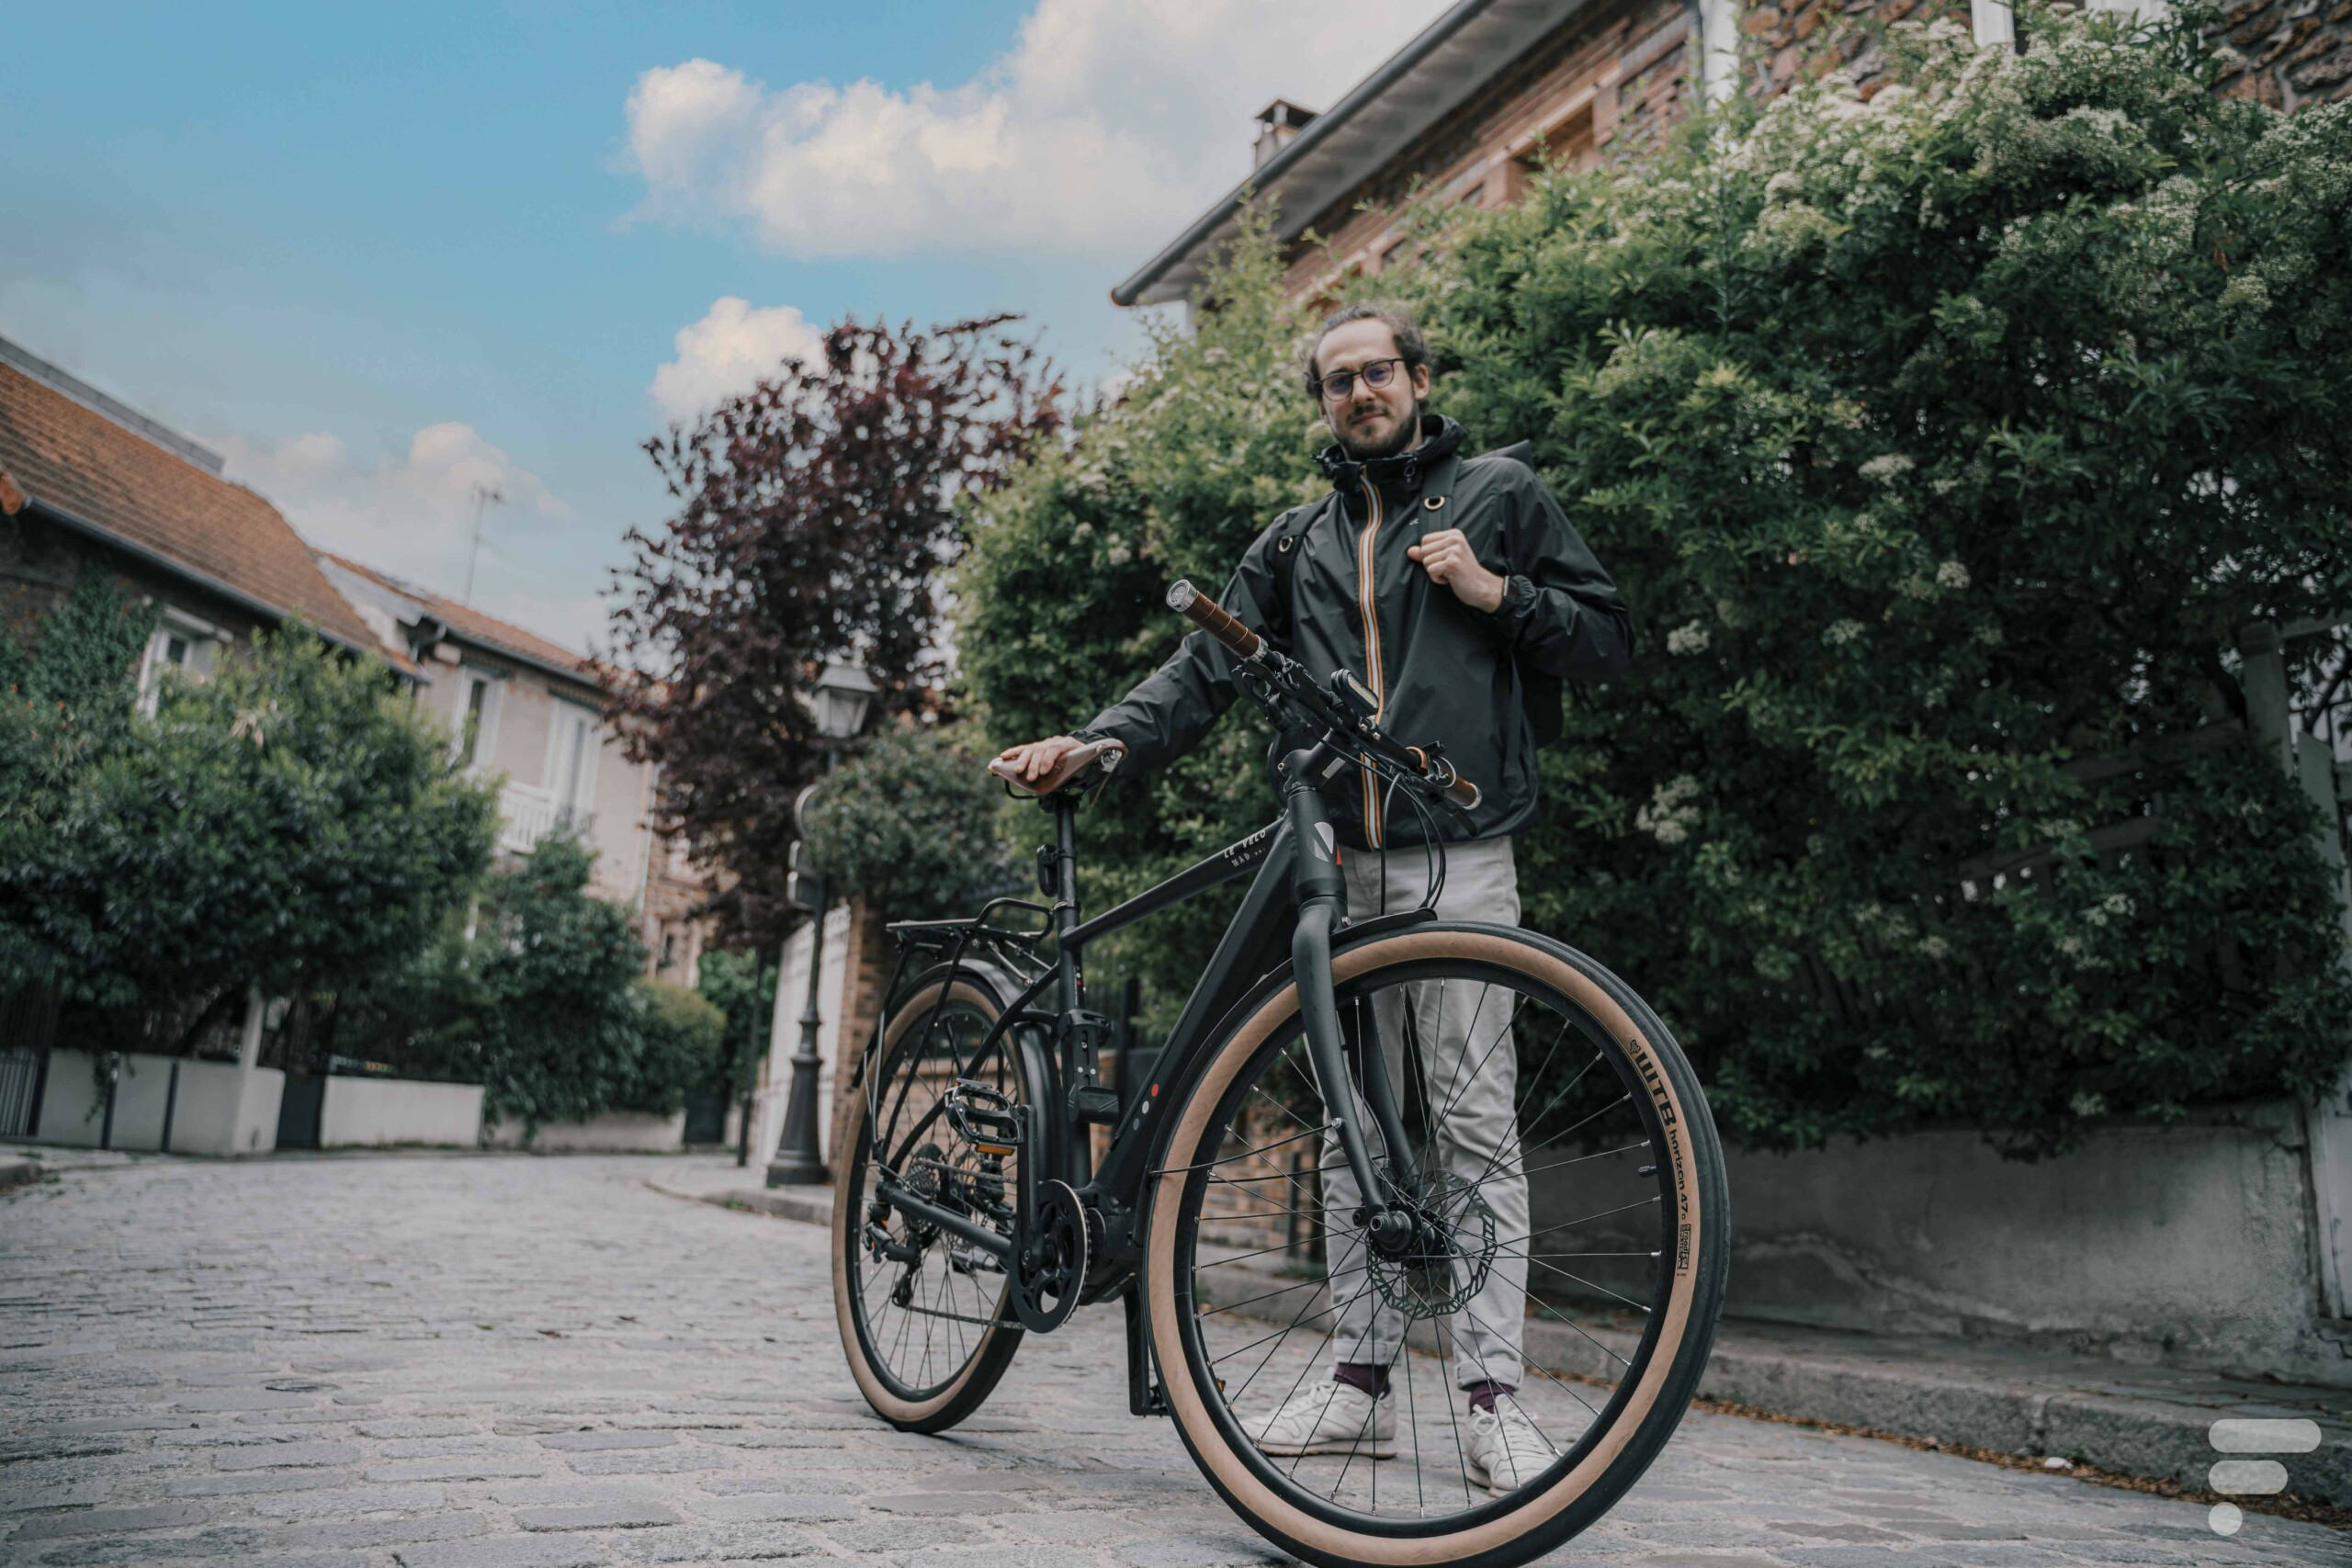 Les meilleurs antivols pour protéger au mieux son vélo - Le Parisien